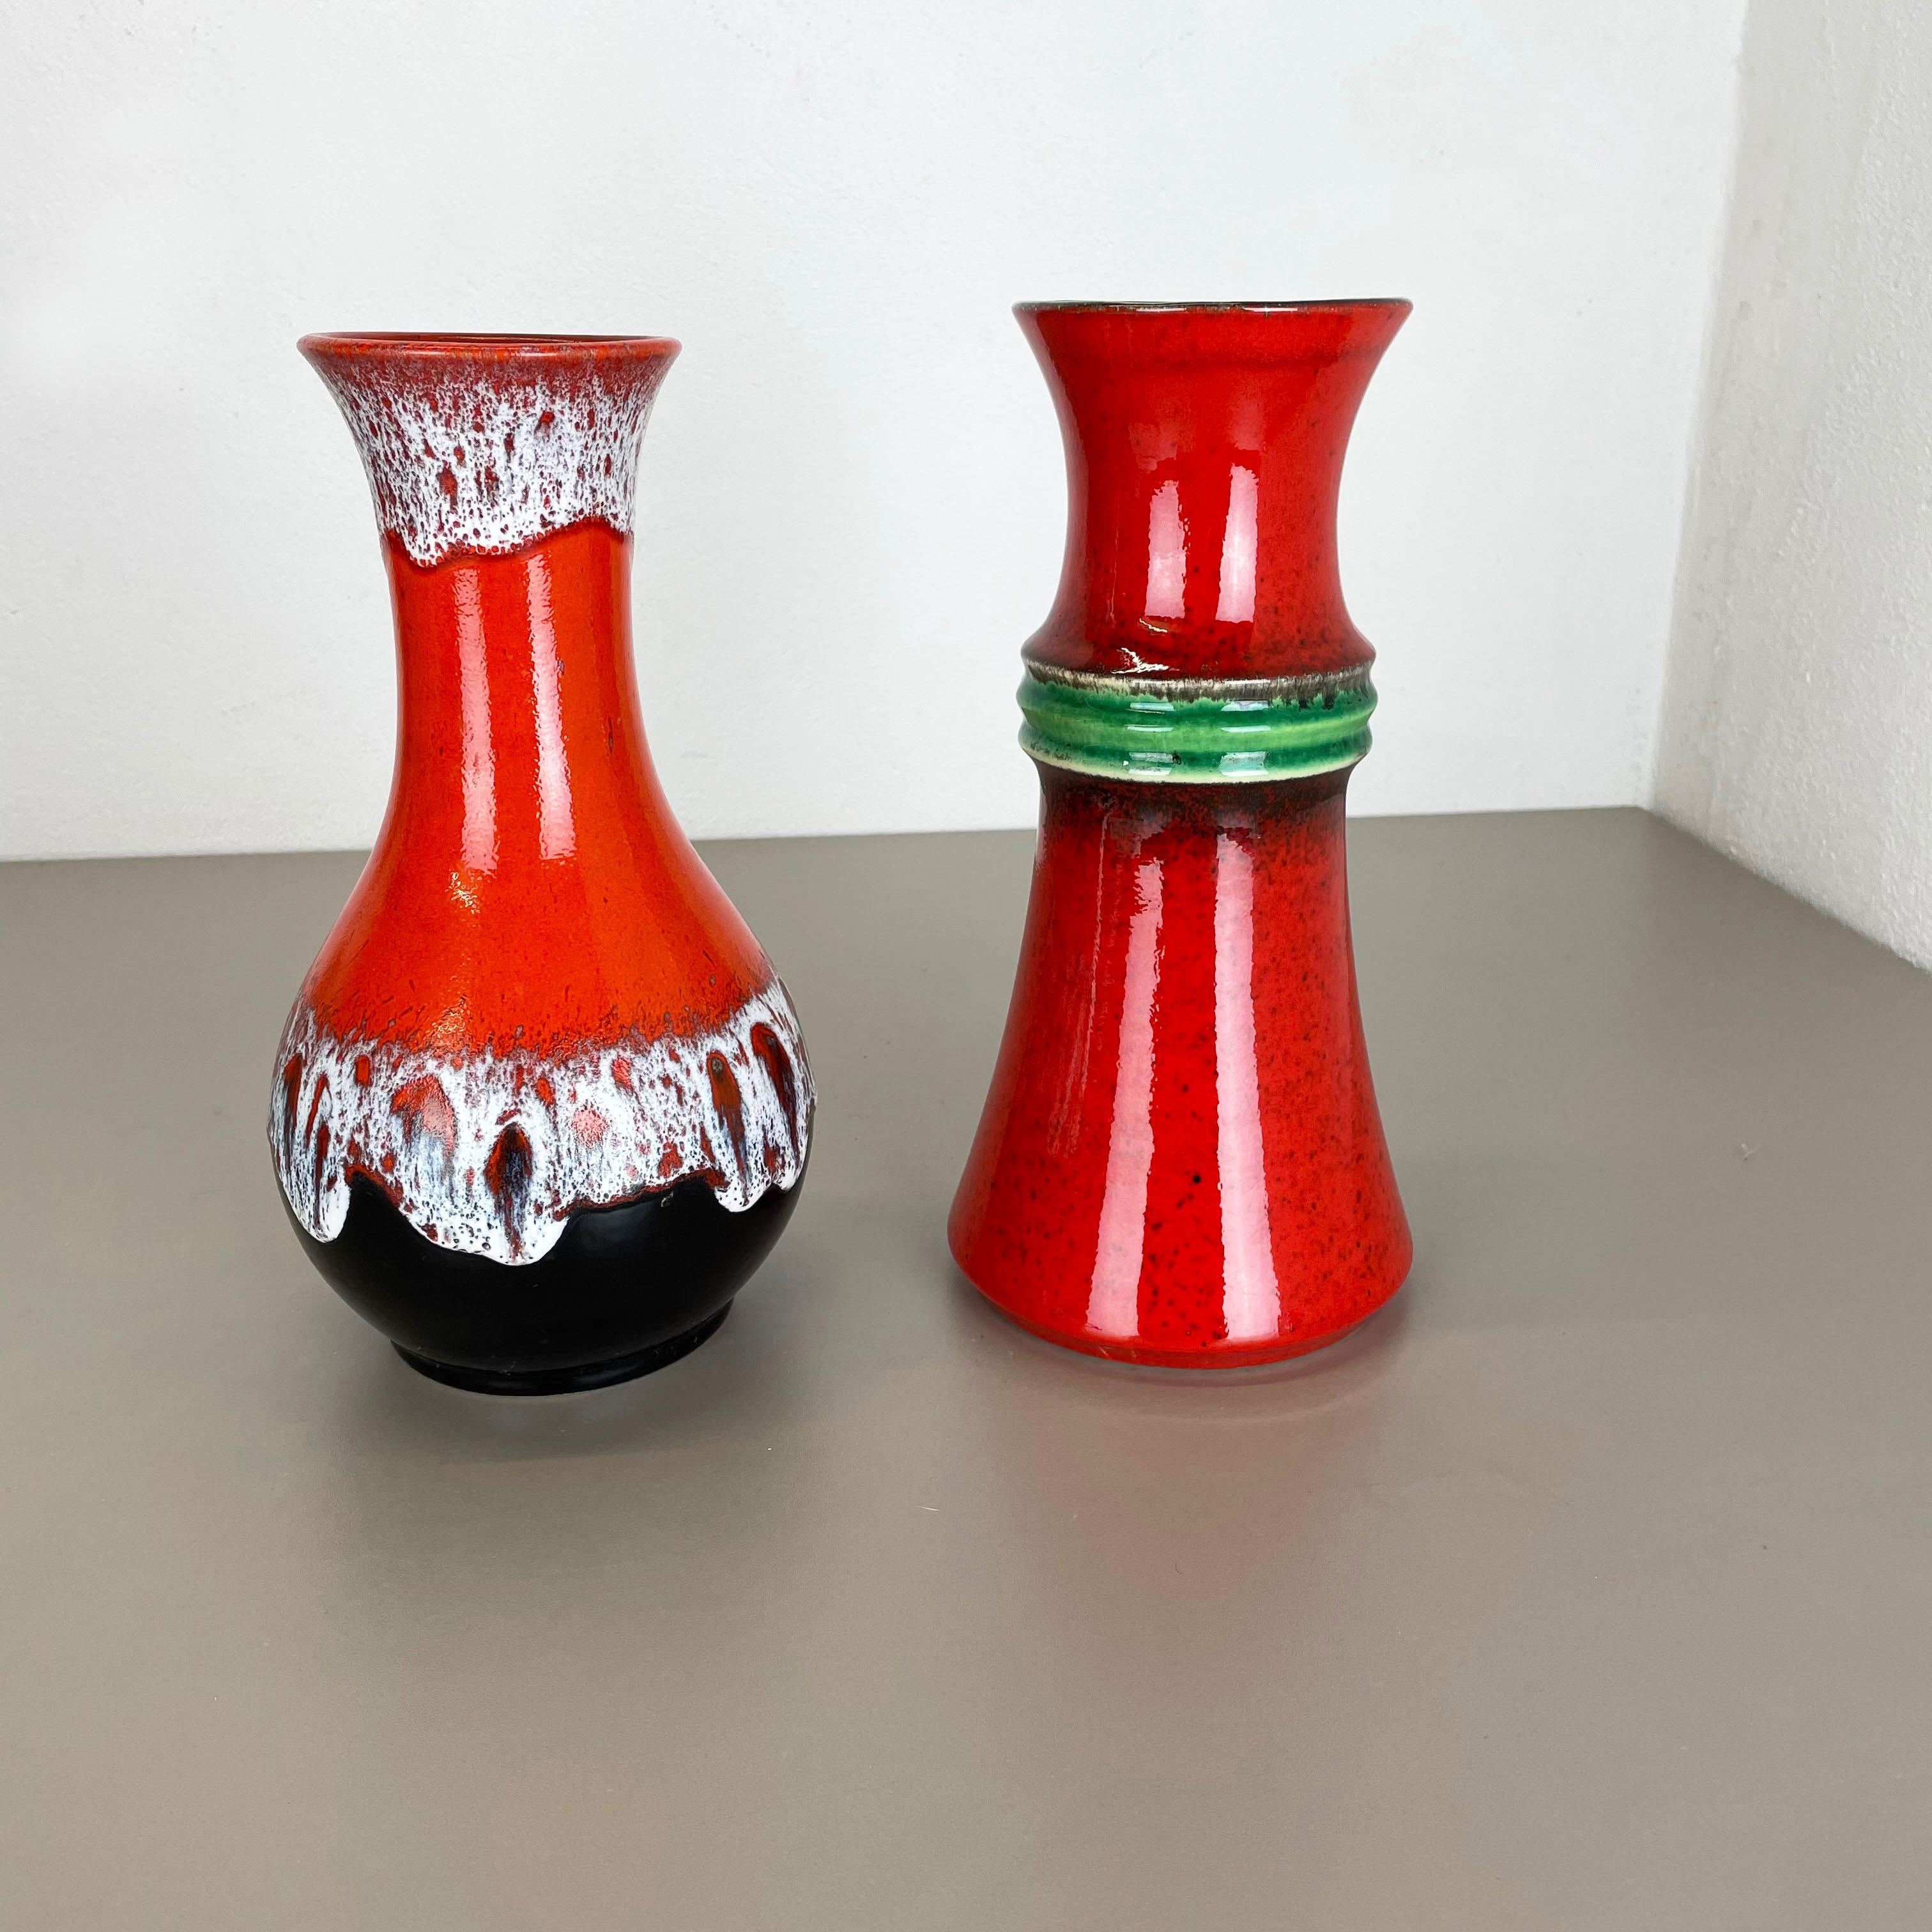 Article :

Ensemble de 2 vases en céramique


Producteur :

JASBA Ceramic, Allemagne


Décennie :

1970s



Description :

Ensemble de 2 vases originaux en céramique des années 1970 fabriqués en Allemagne. Production allemande de